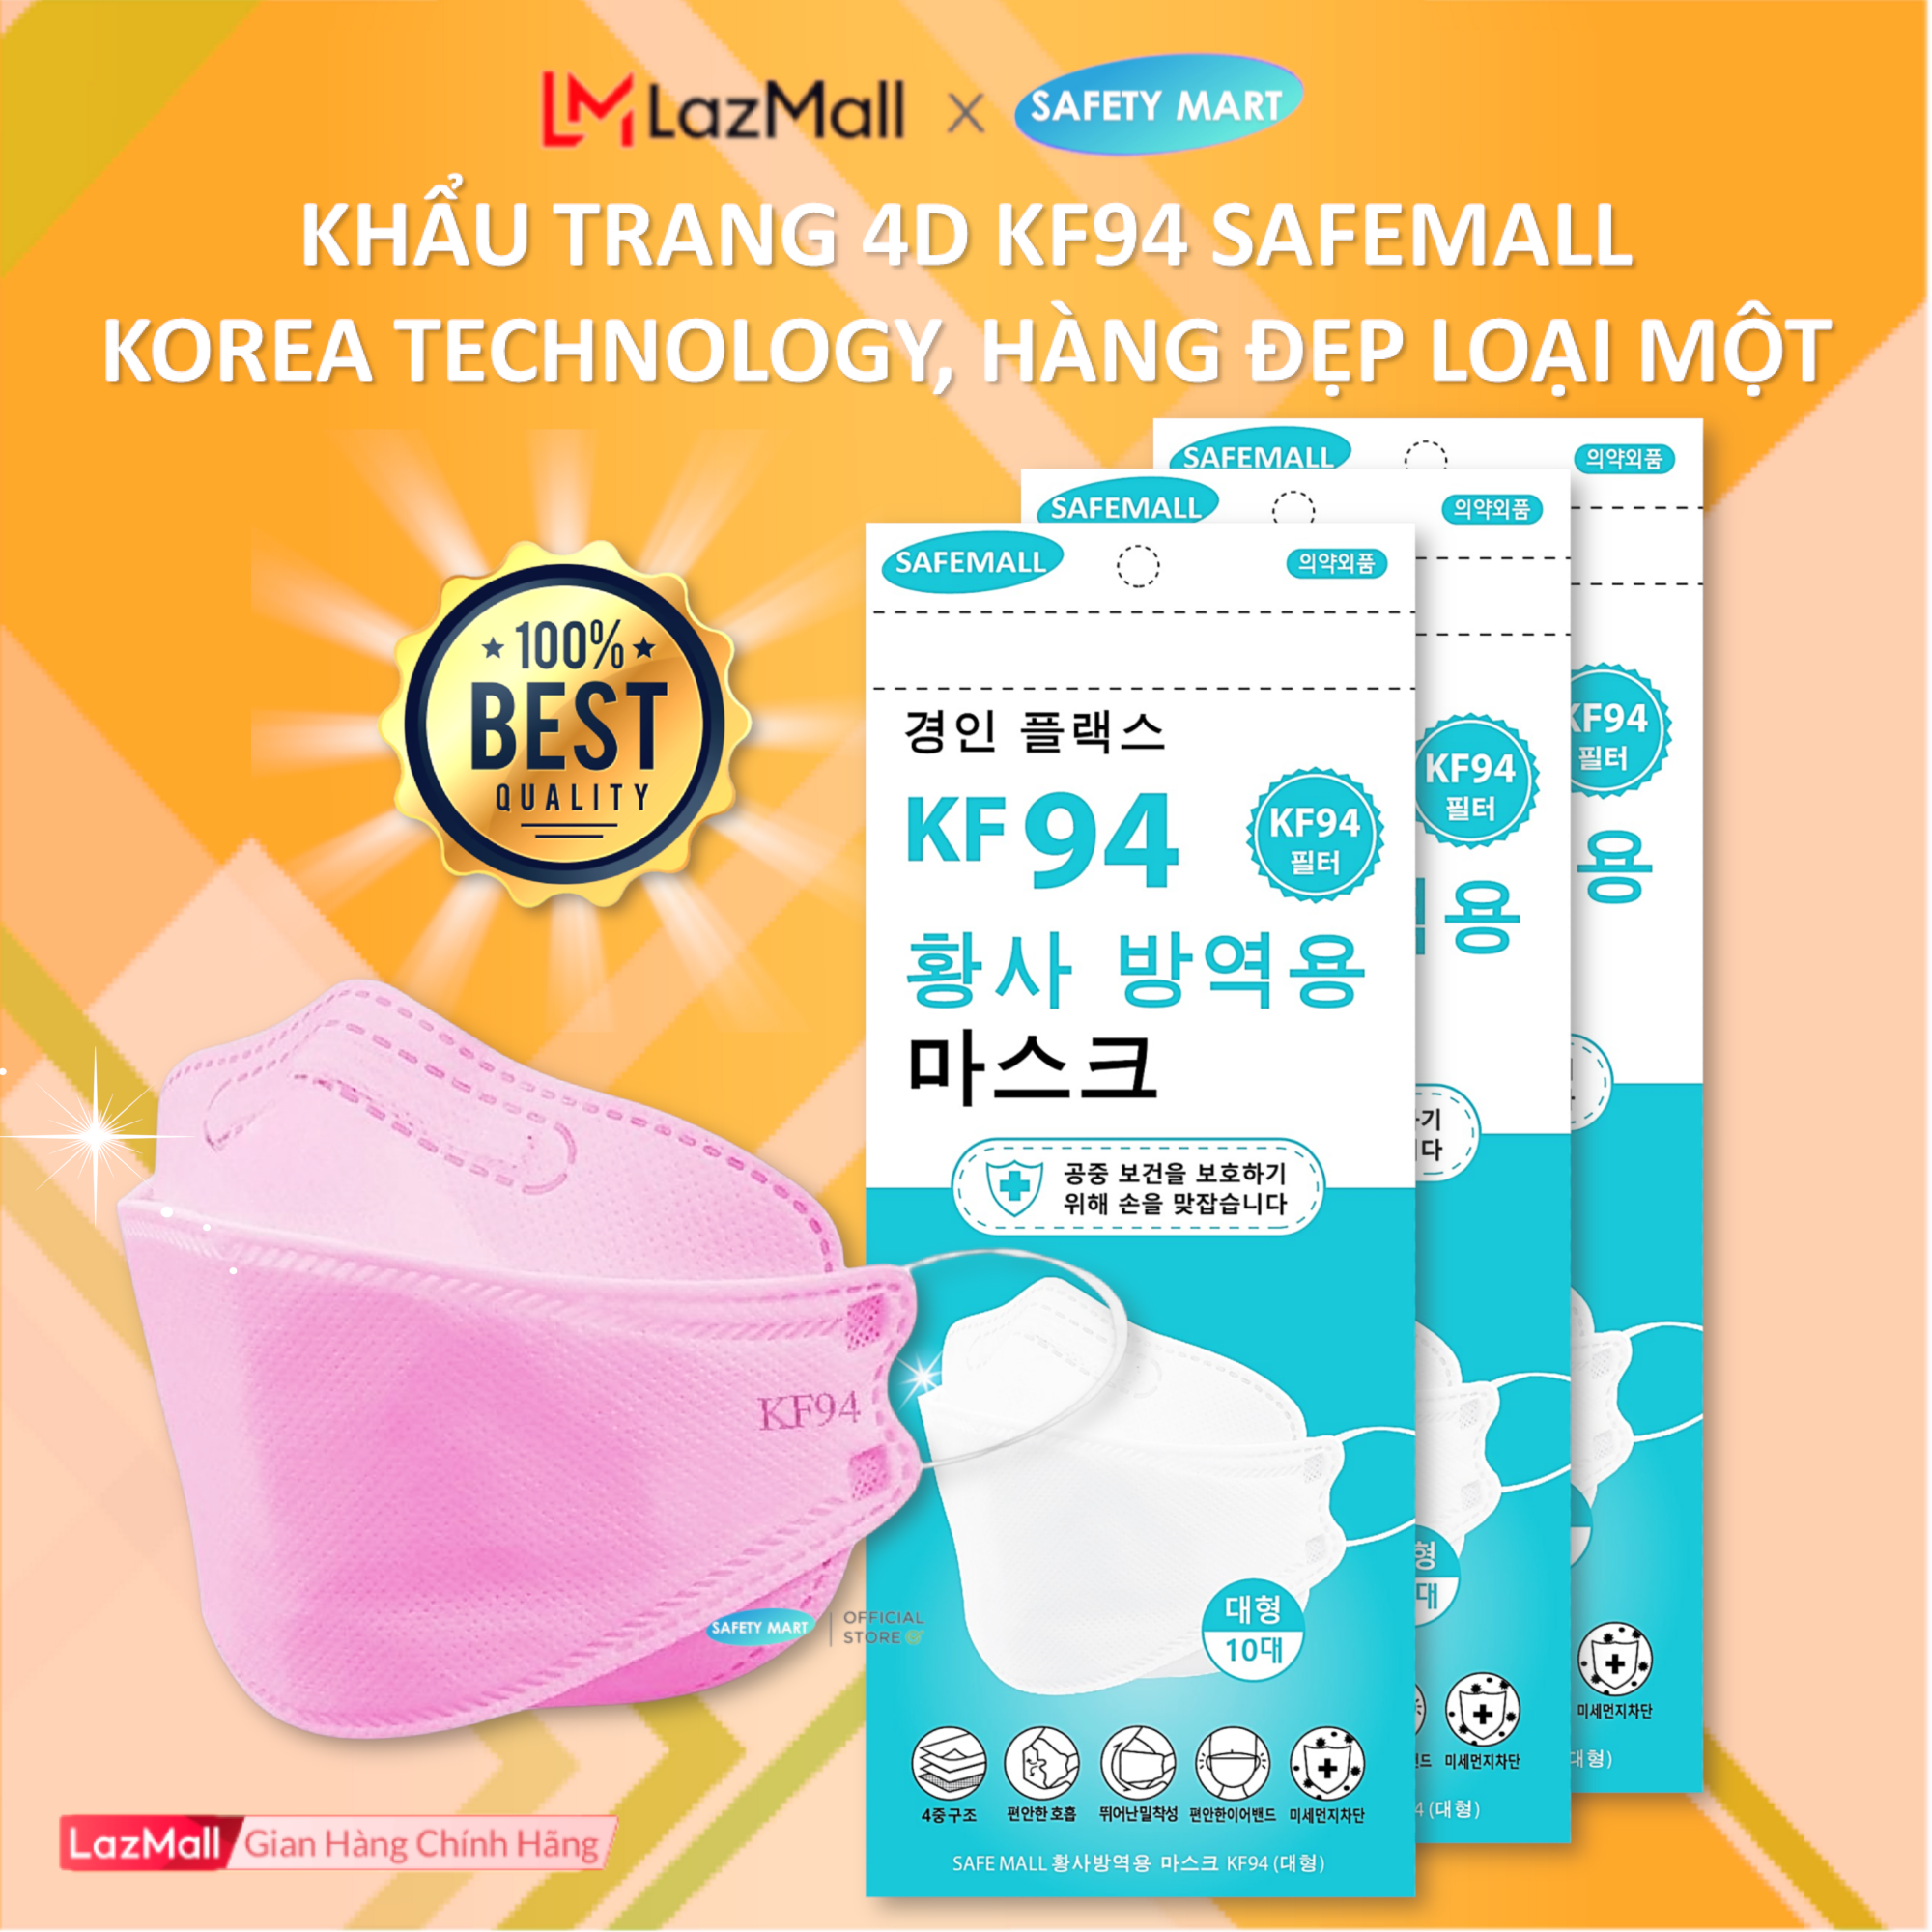 [5 LỚP FILTER] Thùng 300 Khẩu trang y tế 4D KF94 SafeMall Korea Technology, 5 lớp vải kháng khuẩn, kháng bụi mịn lên đến 99%, Khẩu trang dày đẹp loại 1 - Hàng Chính Hãng Safety Mart Official